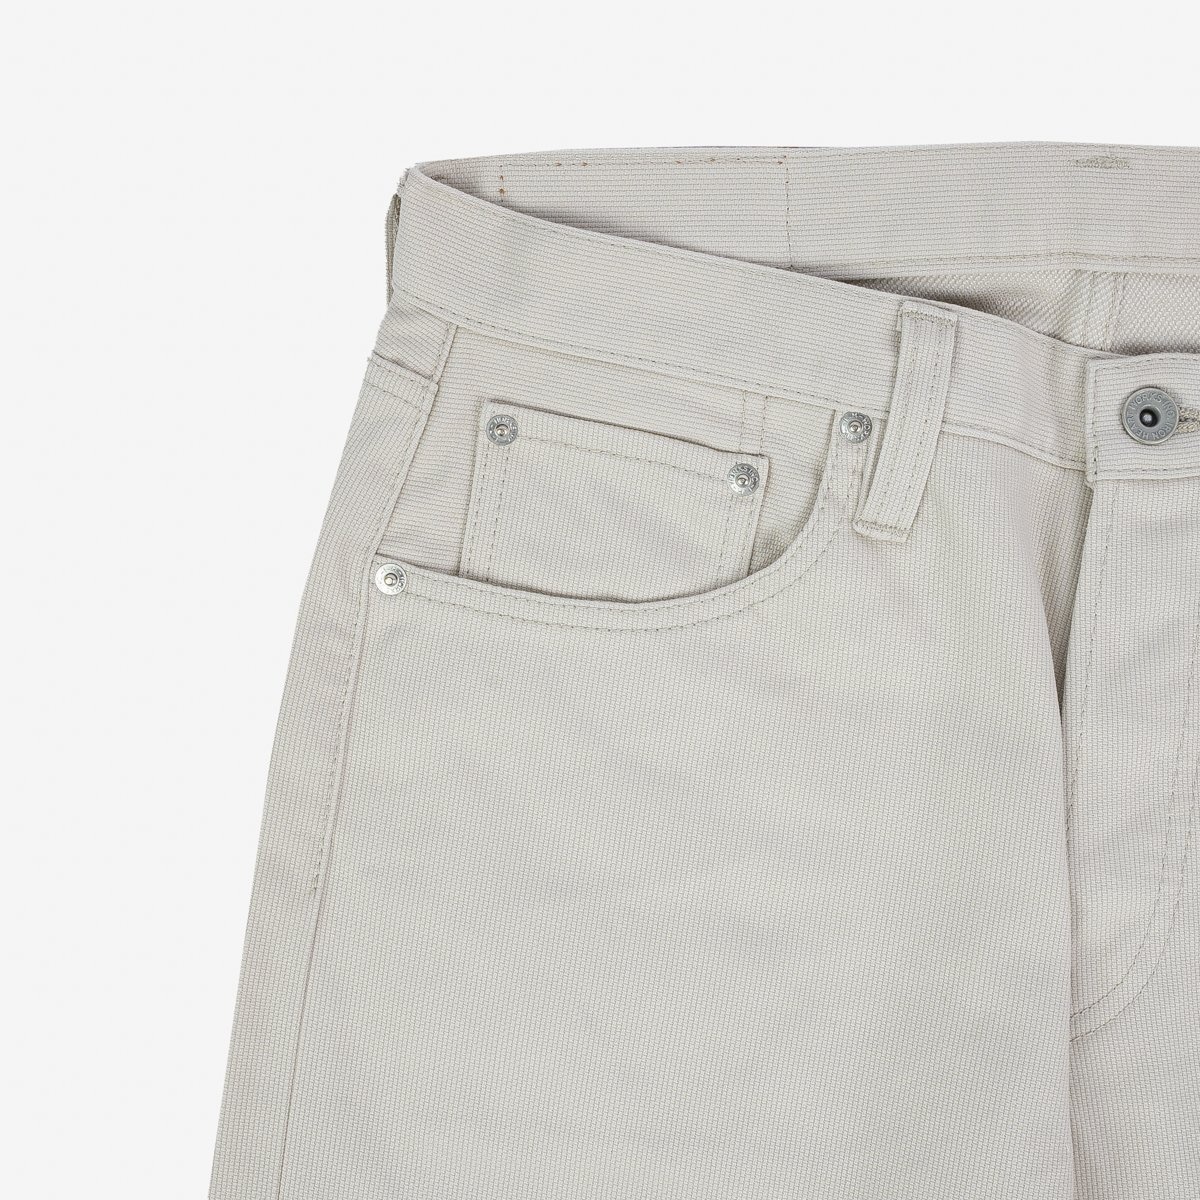 IH-634-PIQ 14oz Cotton Piqué Straight Cut Jeans - Ecru - 6